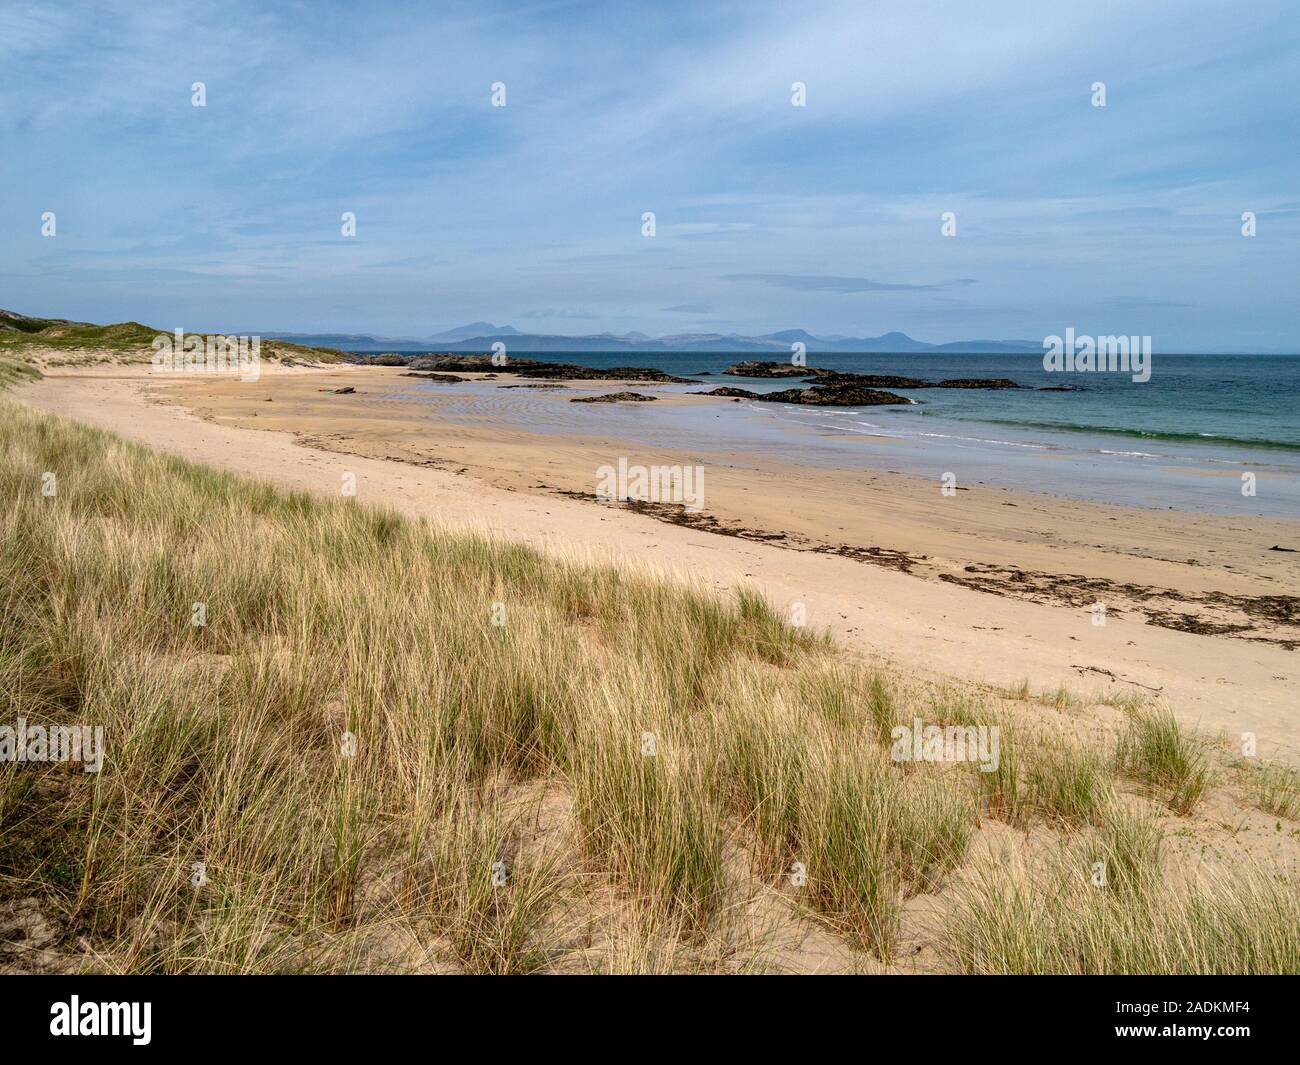 L'ammophile des sables du désert et Balnahard beach, à l'île de Colonsay dans les Hébrides intérieures, avec des îles les îles Hébrides à l'horizon, Ecosse, Royaume-Uni Banque D'Images